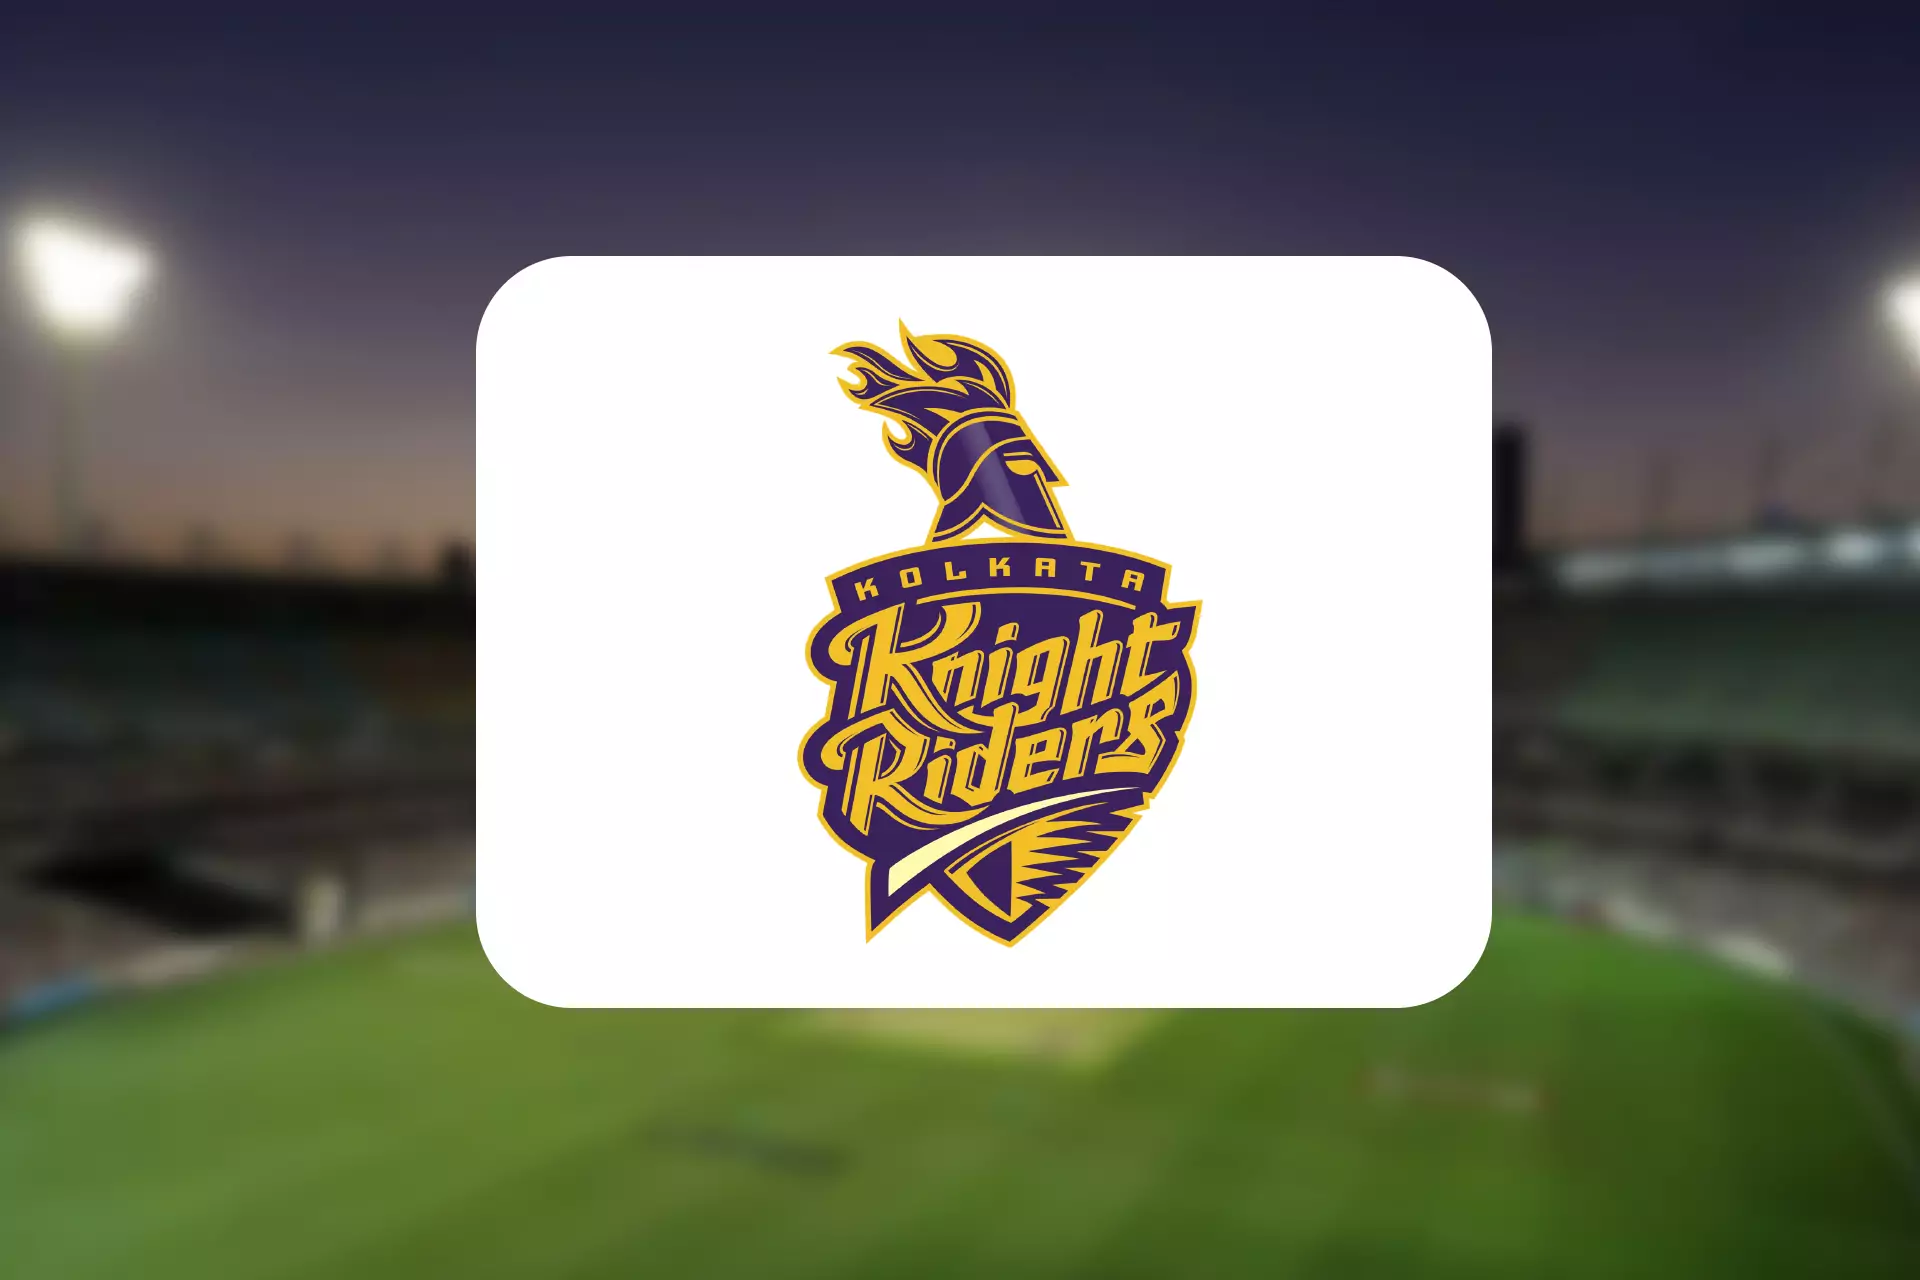 The Kolkata Knight Riders team was the winner of IPL twice.